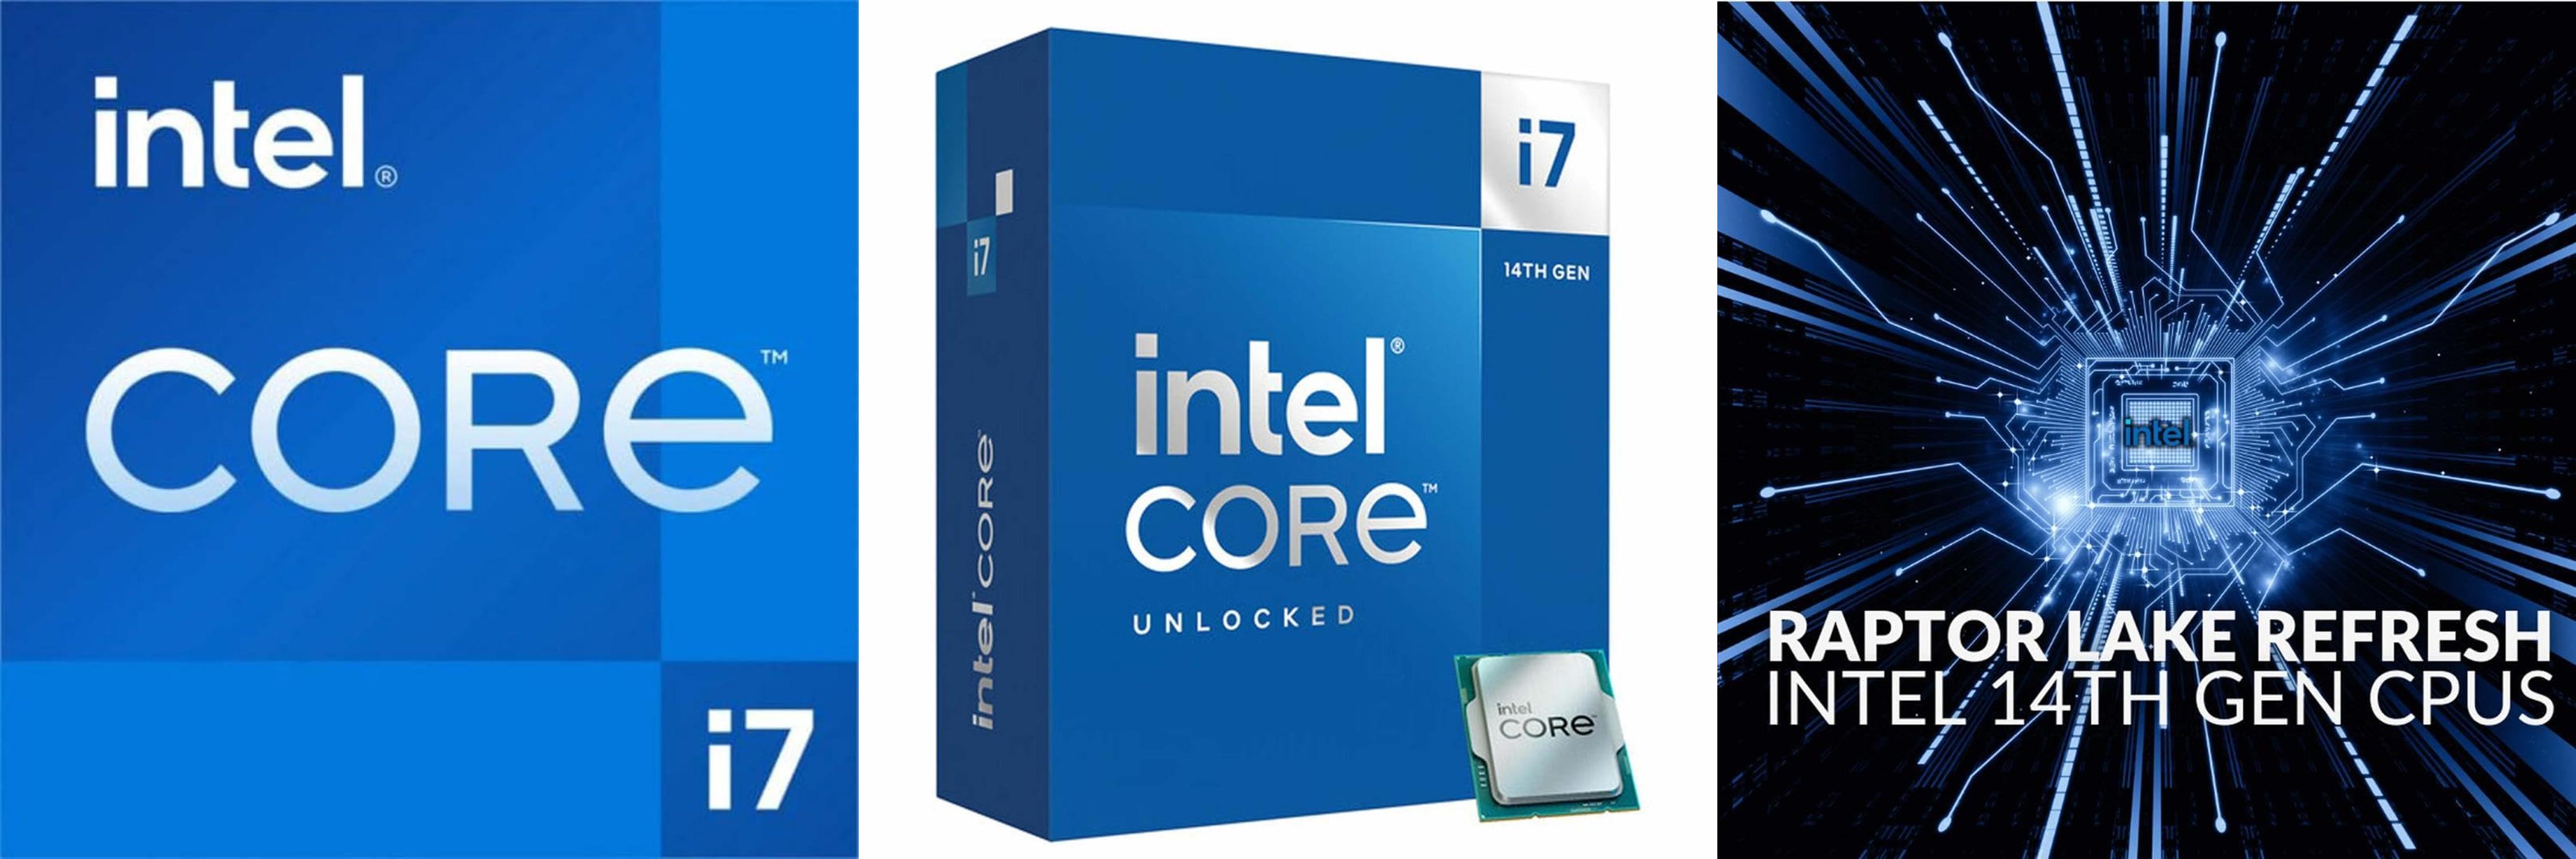 Potencia y rendimiento excepcionales con el procesador Intel® Core™ i7-14700K de 14ª generación para equipos de sobremesa